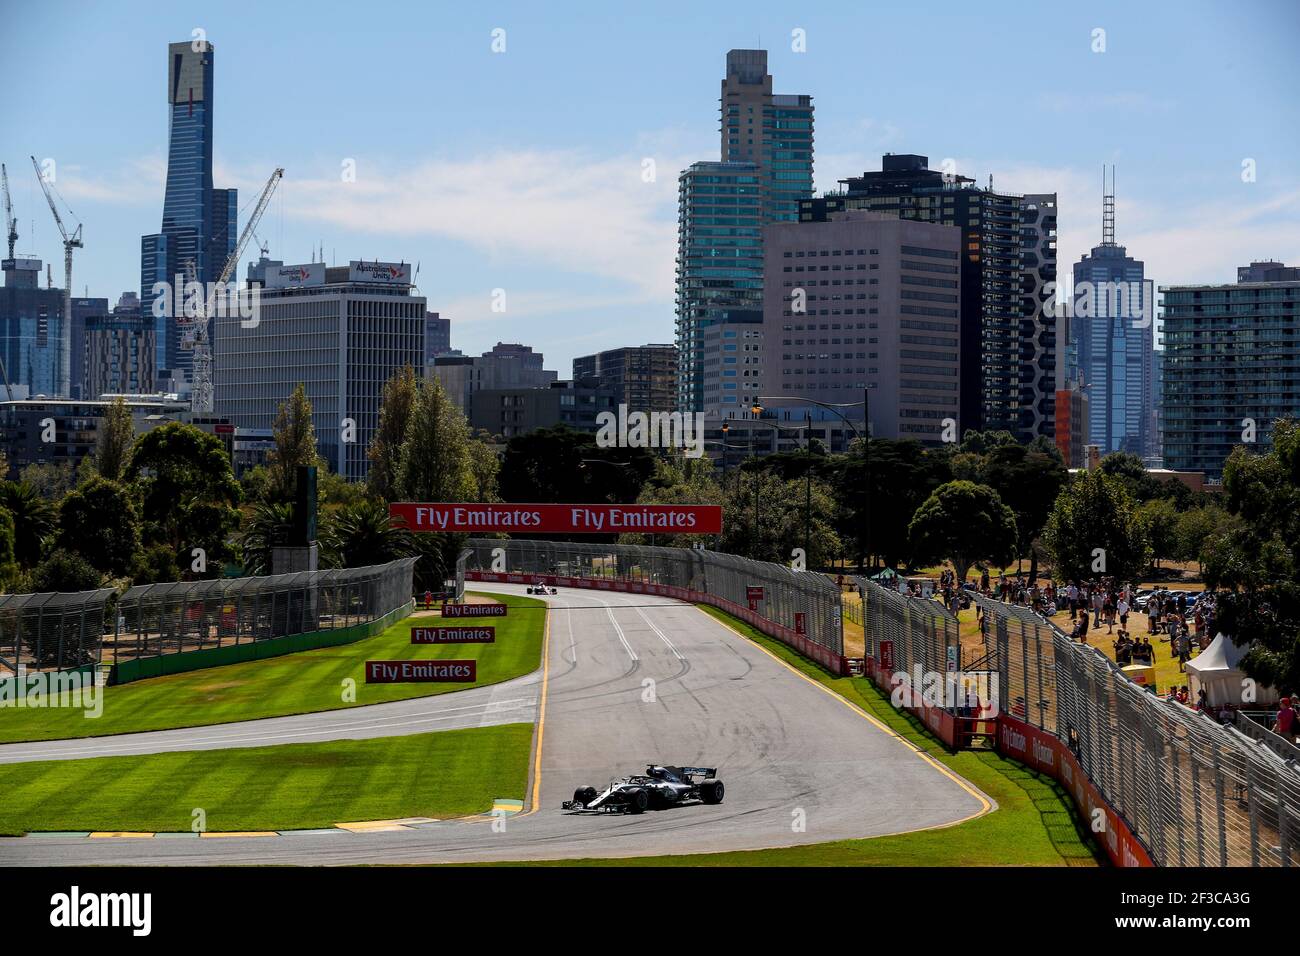 HAMILTON Lewis (gbr), Mercedes AMG F1 Petronas GP W09 Hybrid EQ Power+, azione durante il campionato di Formula 1 2018 a Melbourne, Gran Premio d'Australia, dal 22 al 25 marzo - Foto DPPI Foto Stock